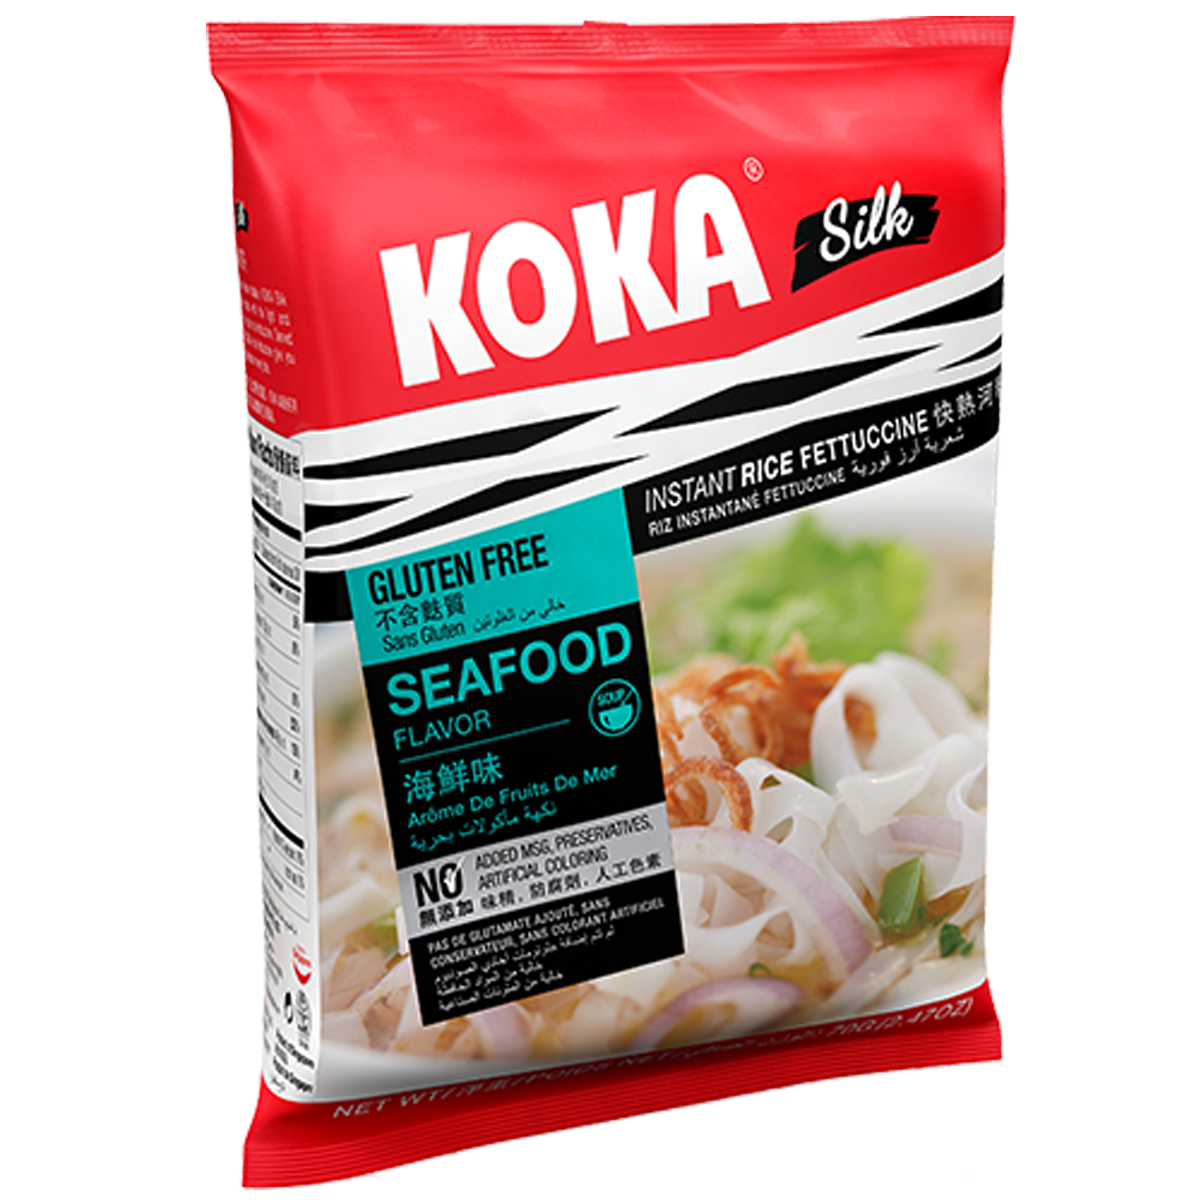 Koka Silk Seafood Rice Noodles Soup 70g